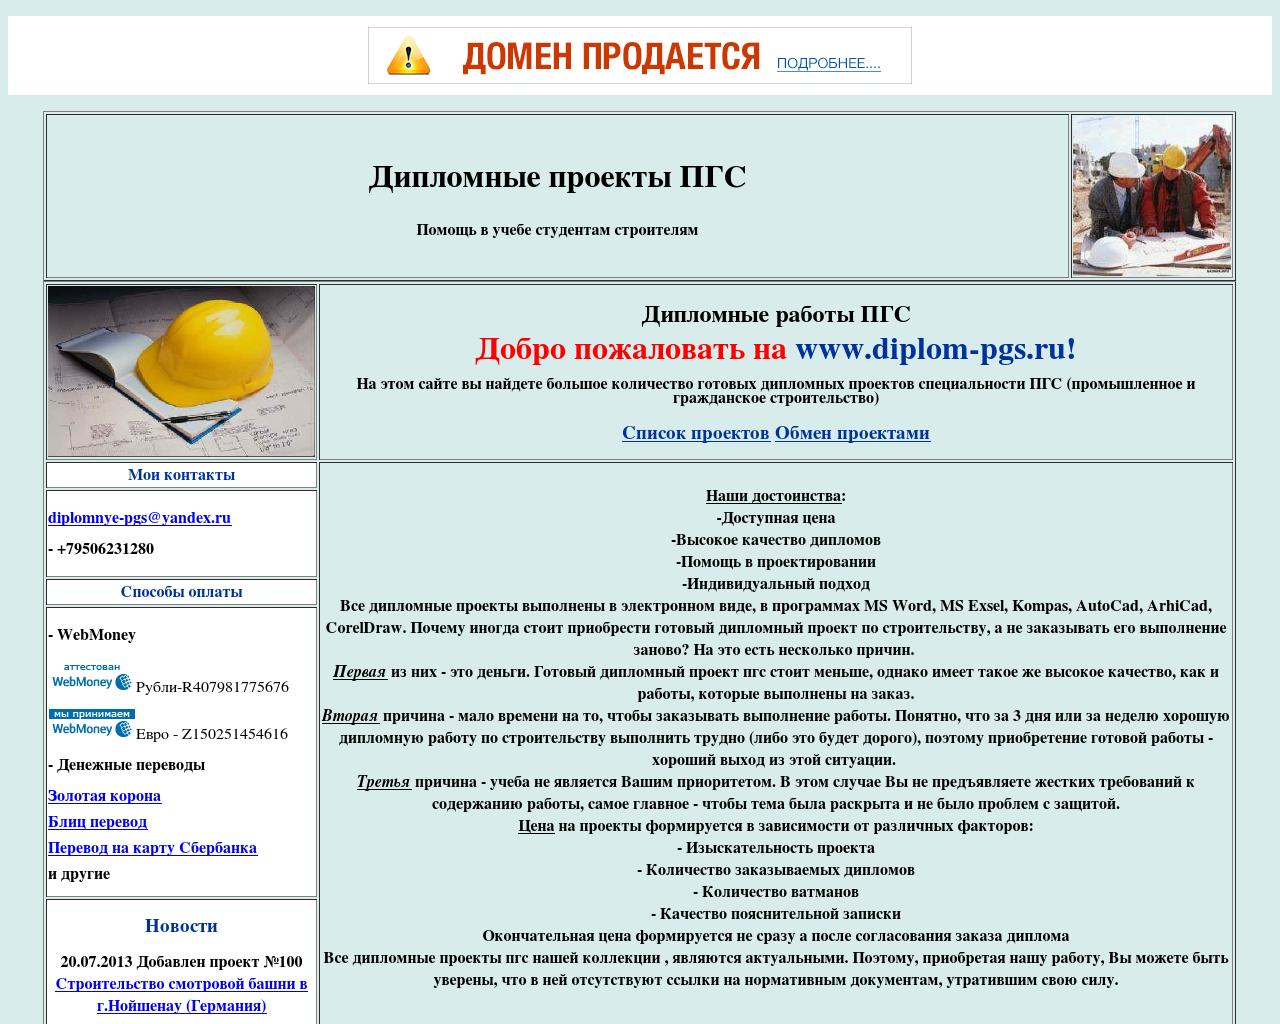 Изображение сайта diplom-pgs.ru в разрешении 1280x1024